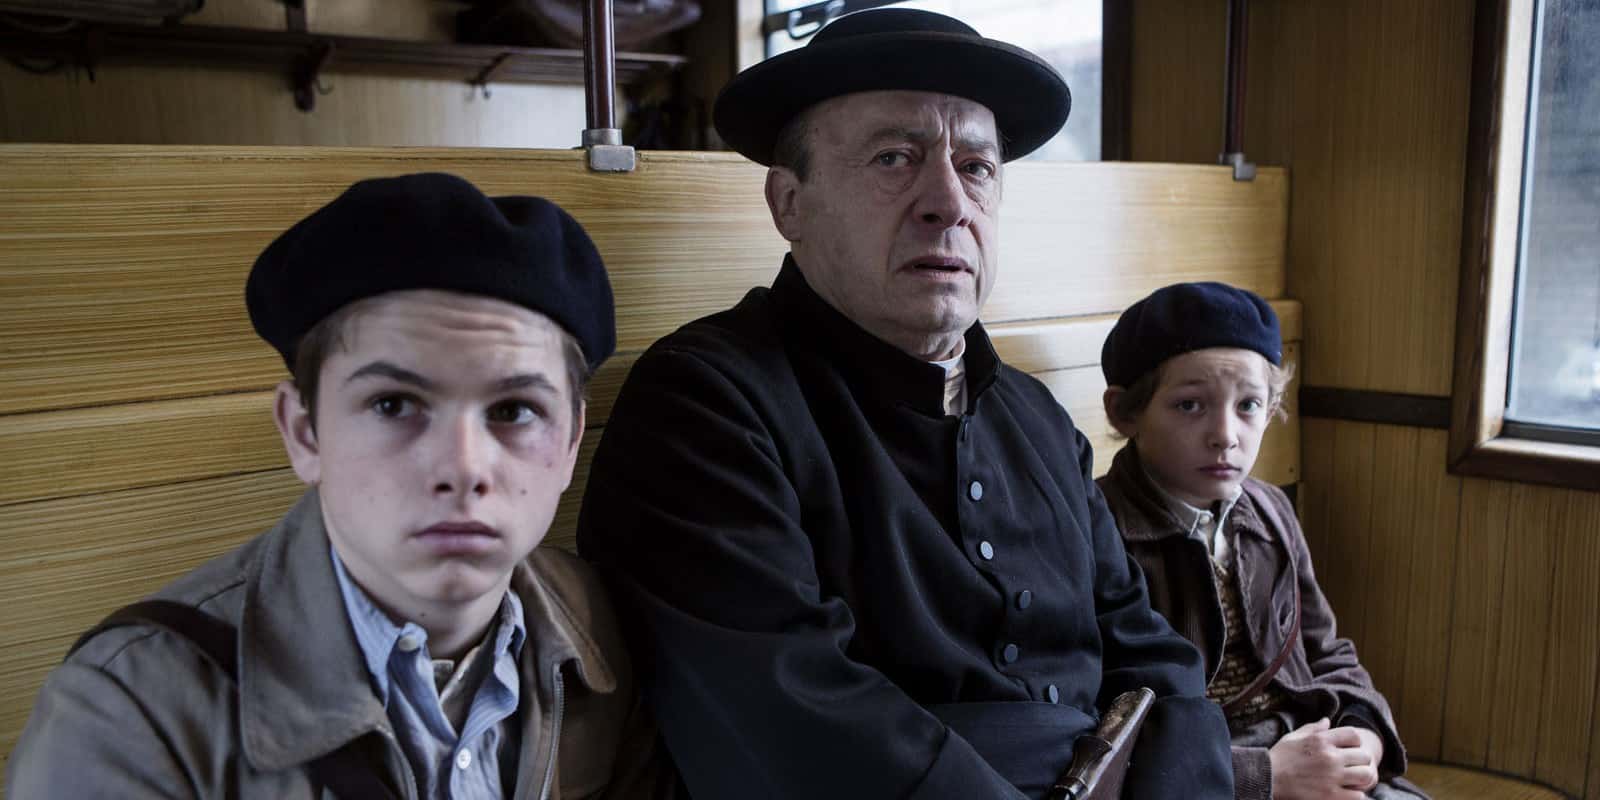 Cena da adaptação cinematográfica, em que o padre salva as duas crianças no trem